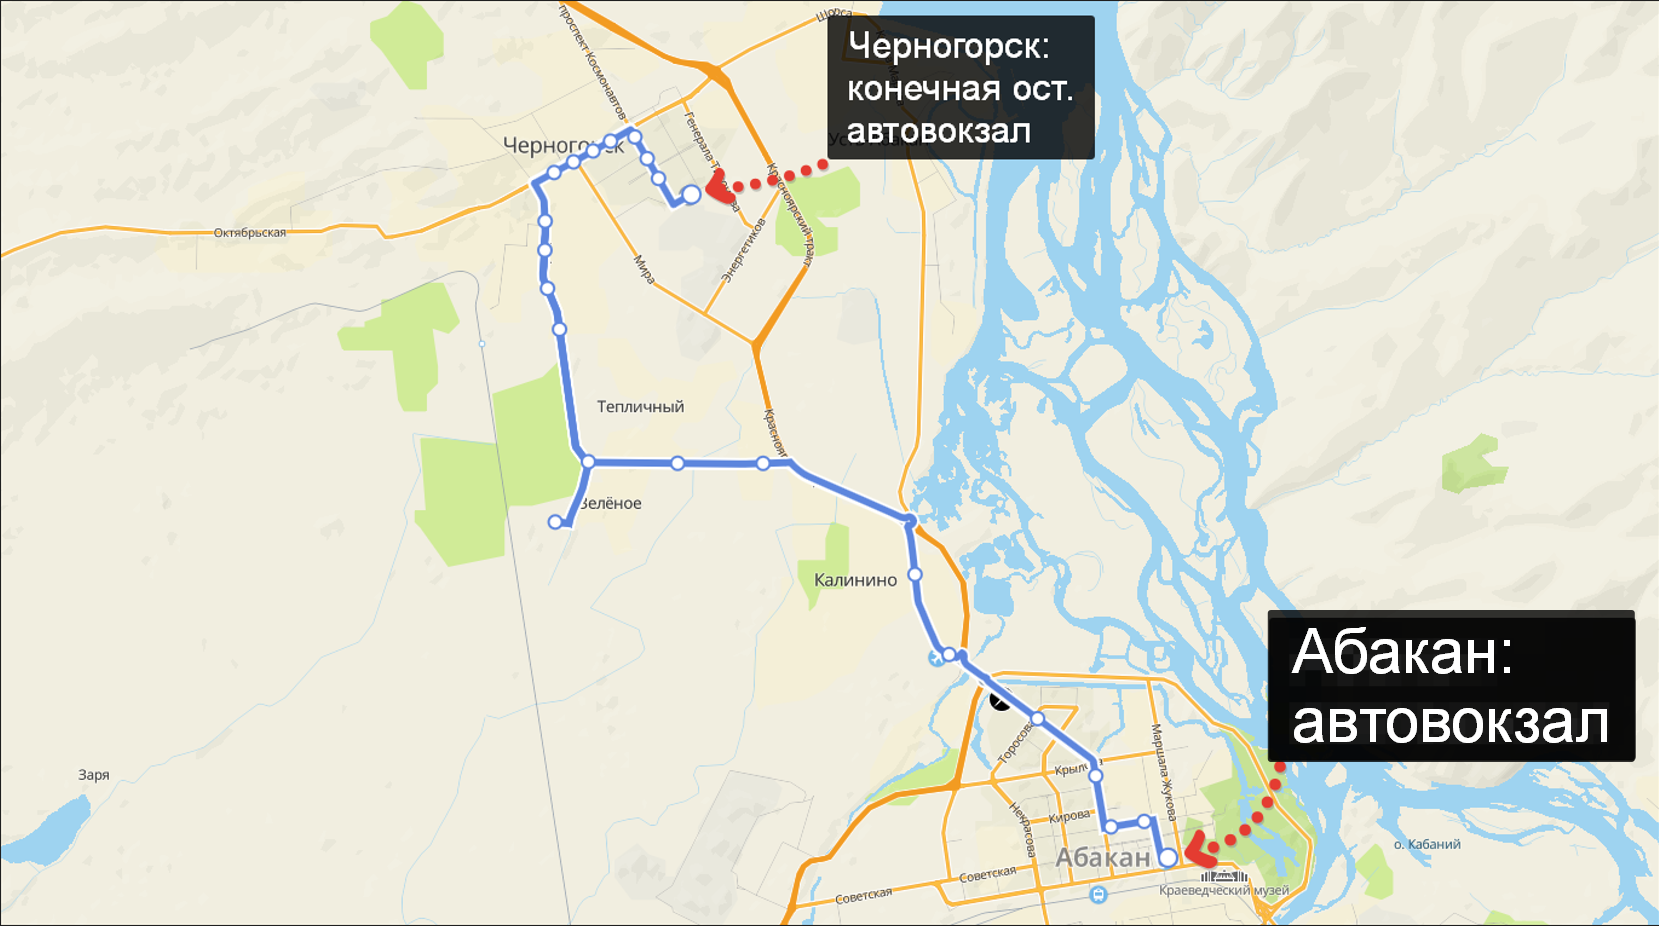 Схема маршрута движения автобуса № 105, Абакан - Черногорск.